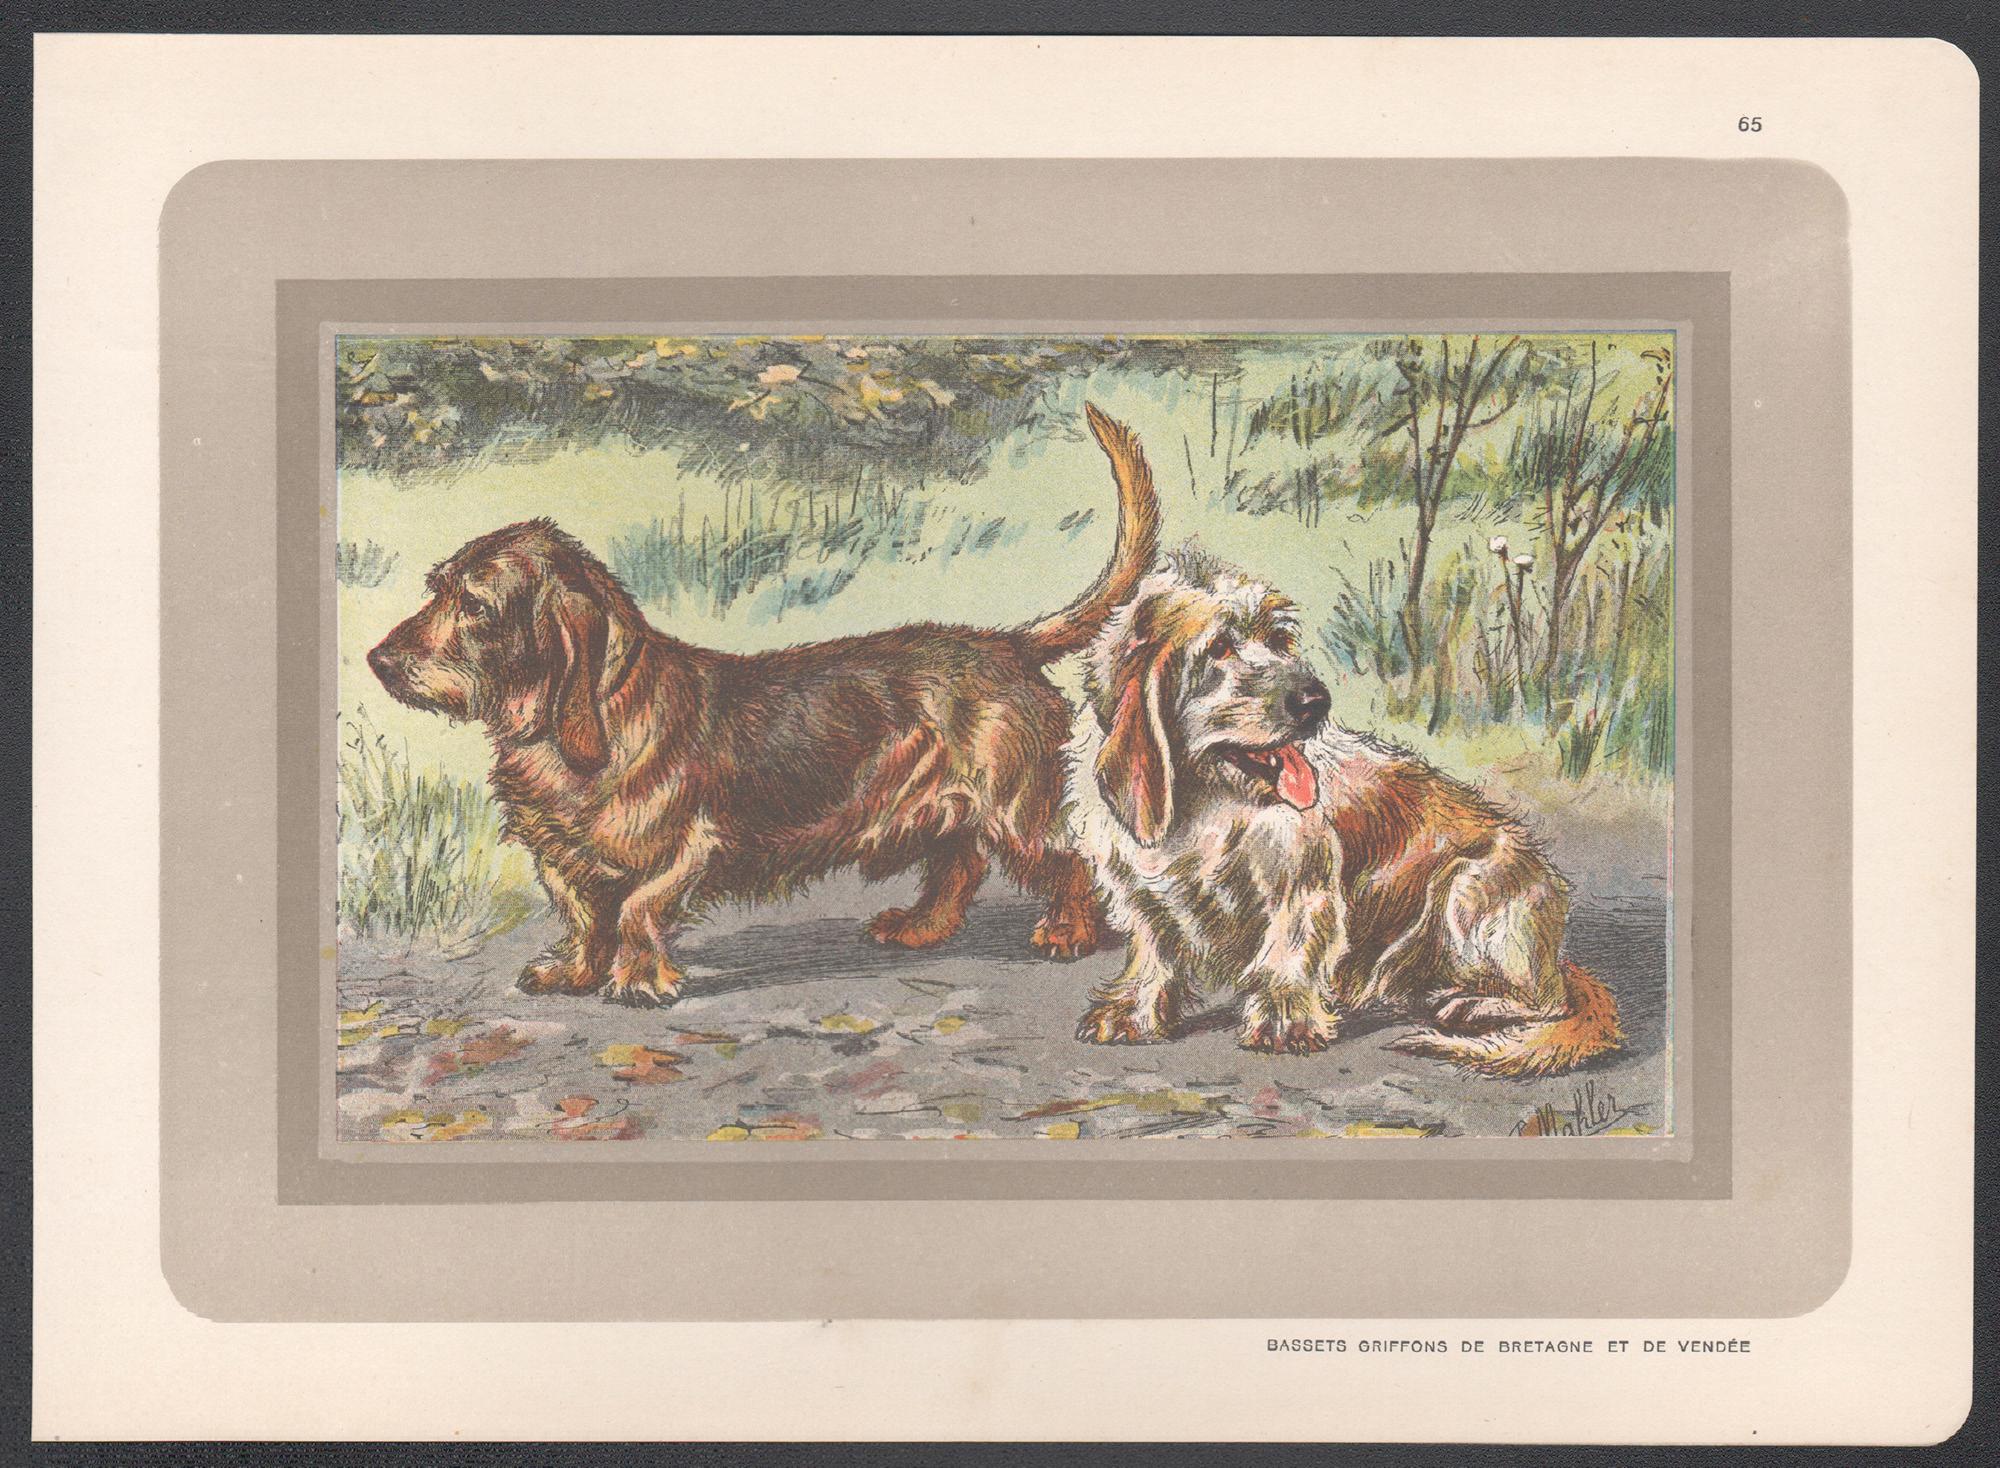 Bassets Griffons, impression chromolithographie d'un chien de chasse français, années 1930 - Print de P. Mahler